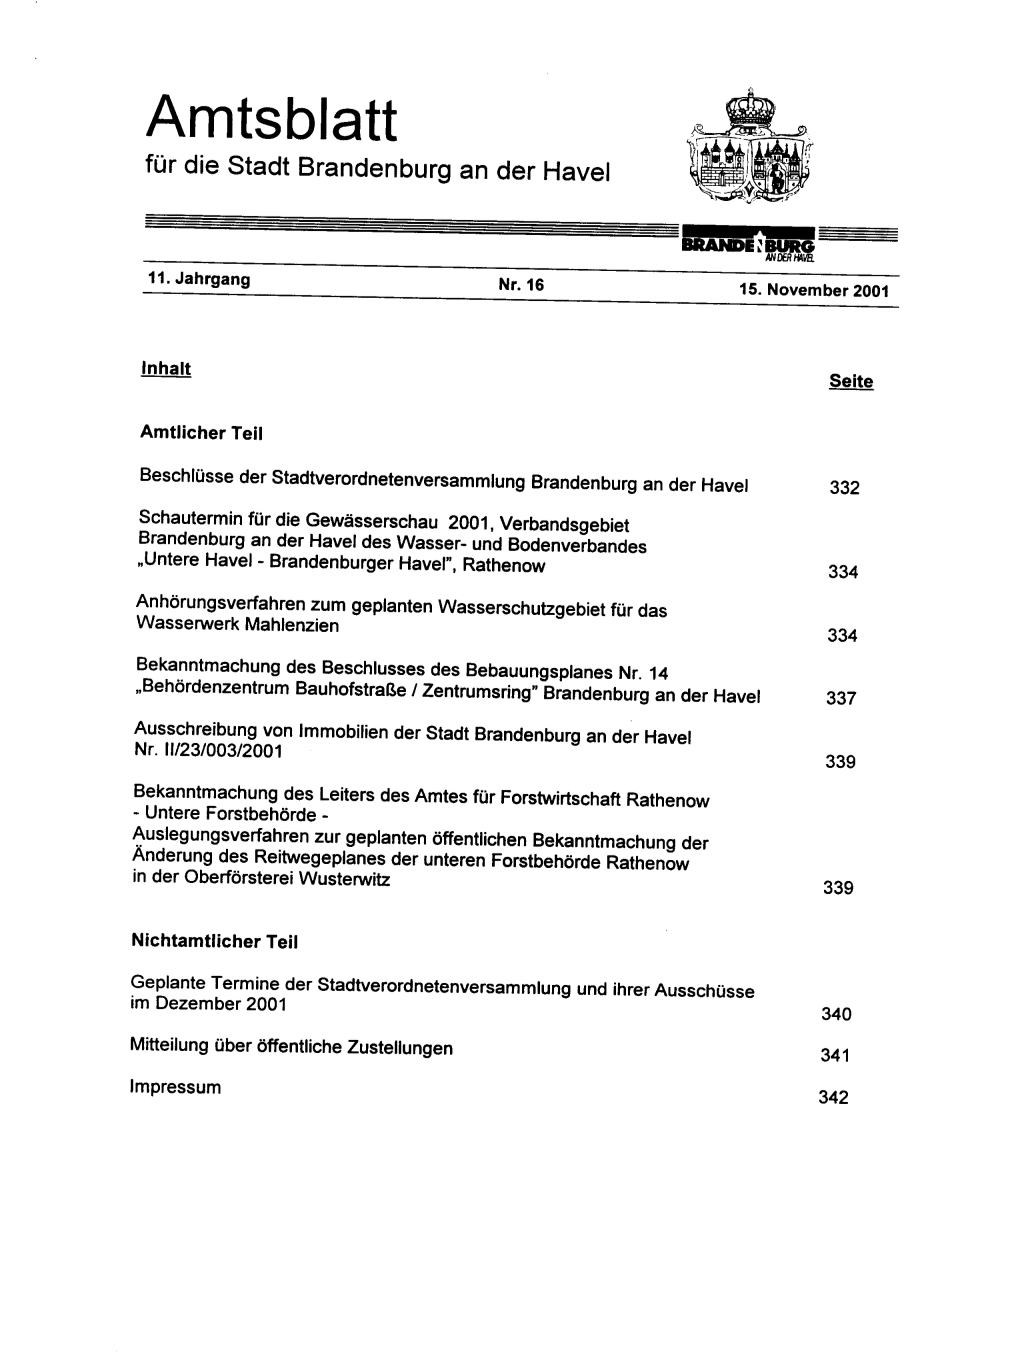 Amtsblatt for Die Stadt Brandenburg an Der Havel